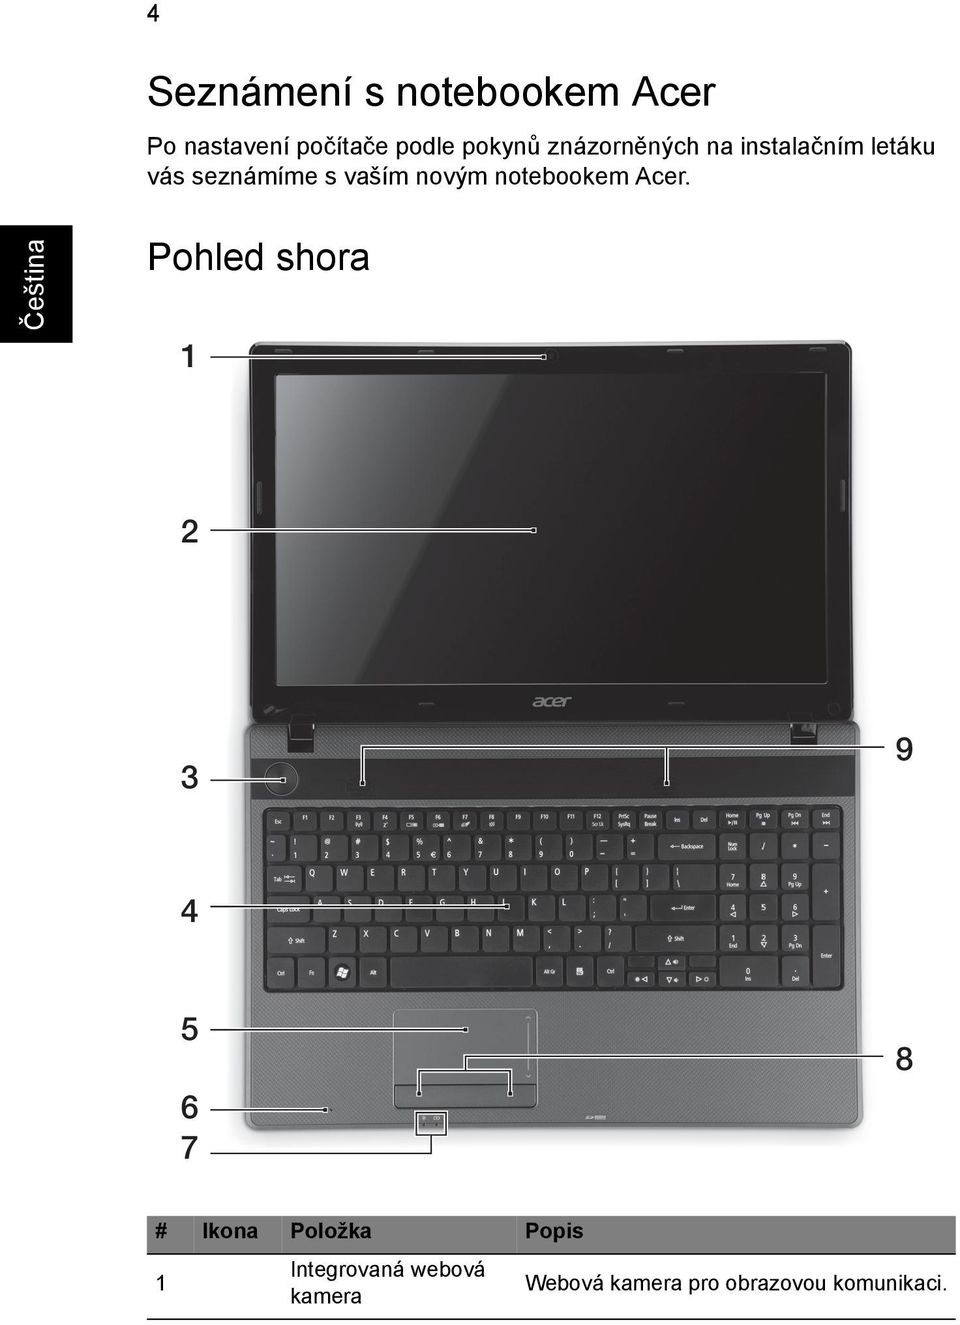 vaším novým notebookem Acer.